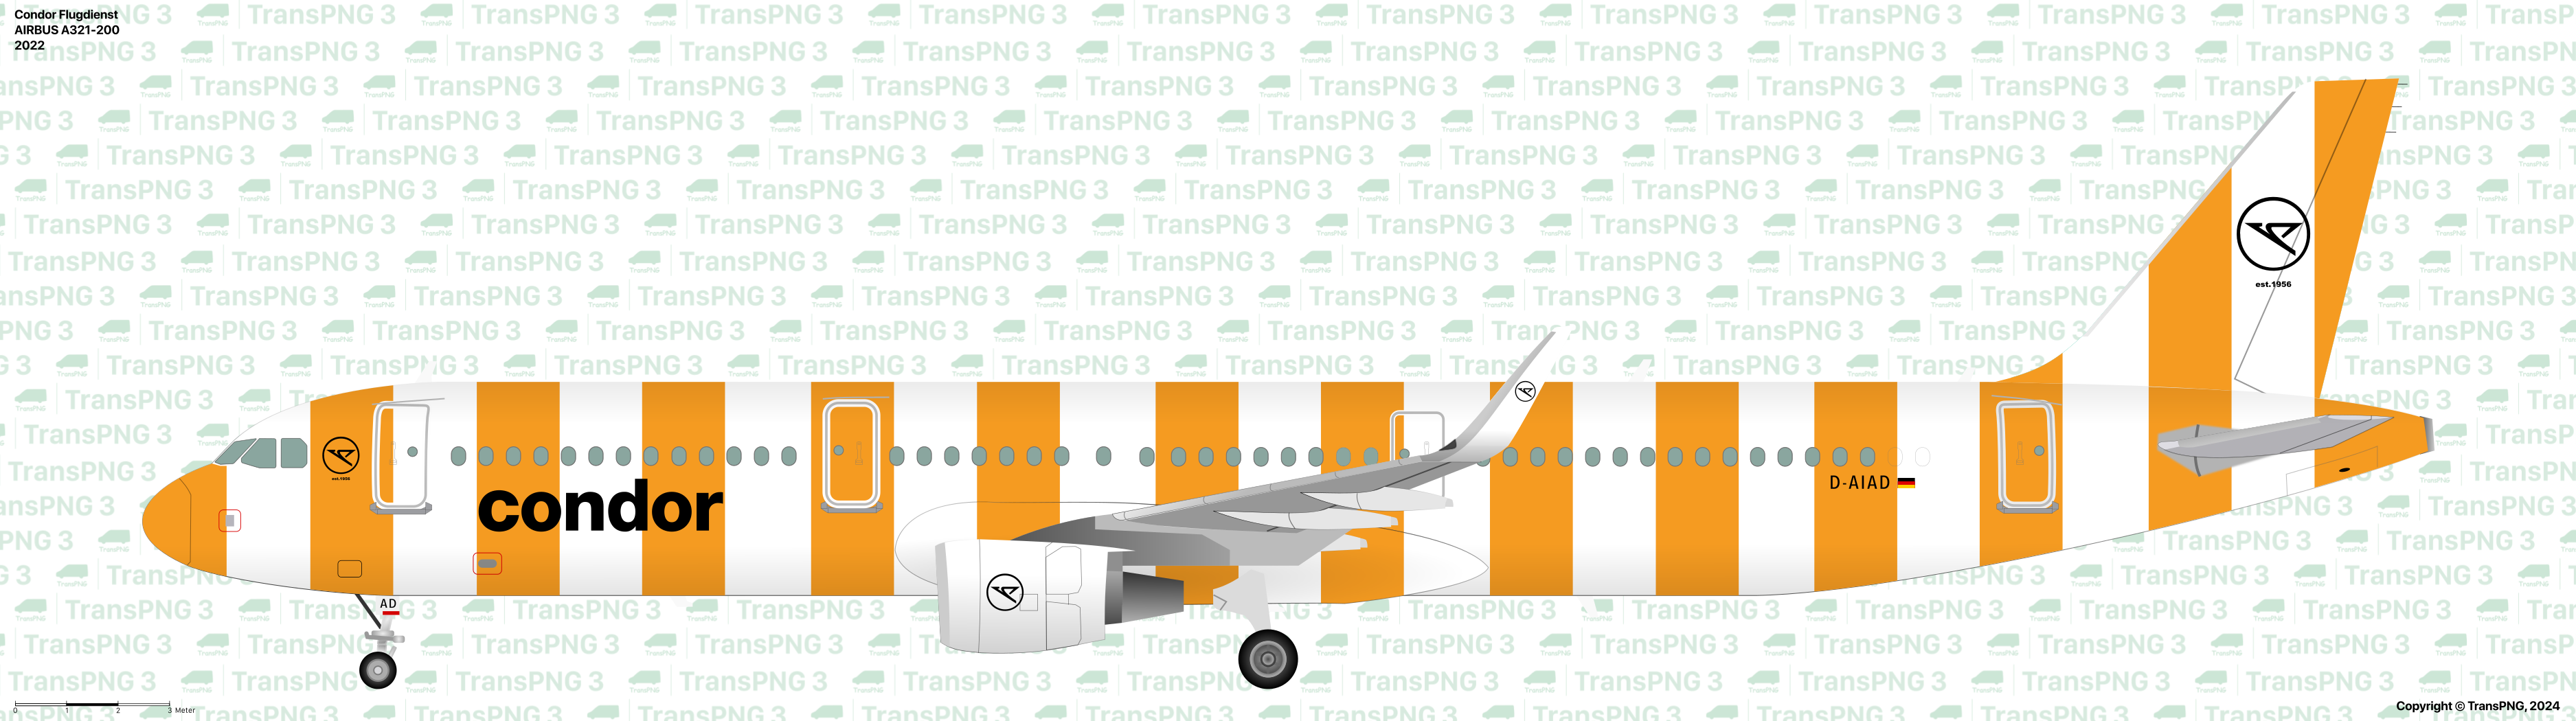 TransPNG.net | 分享世界各地多種交通工具的優秀繪圖 - 客機 53481983100_3f17f809f4_o